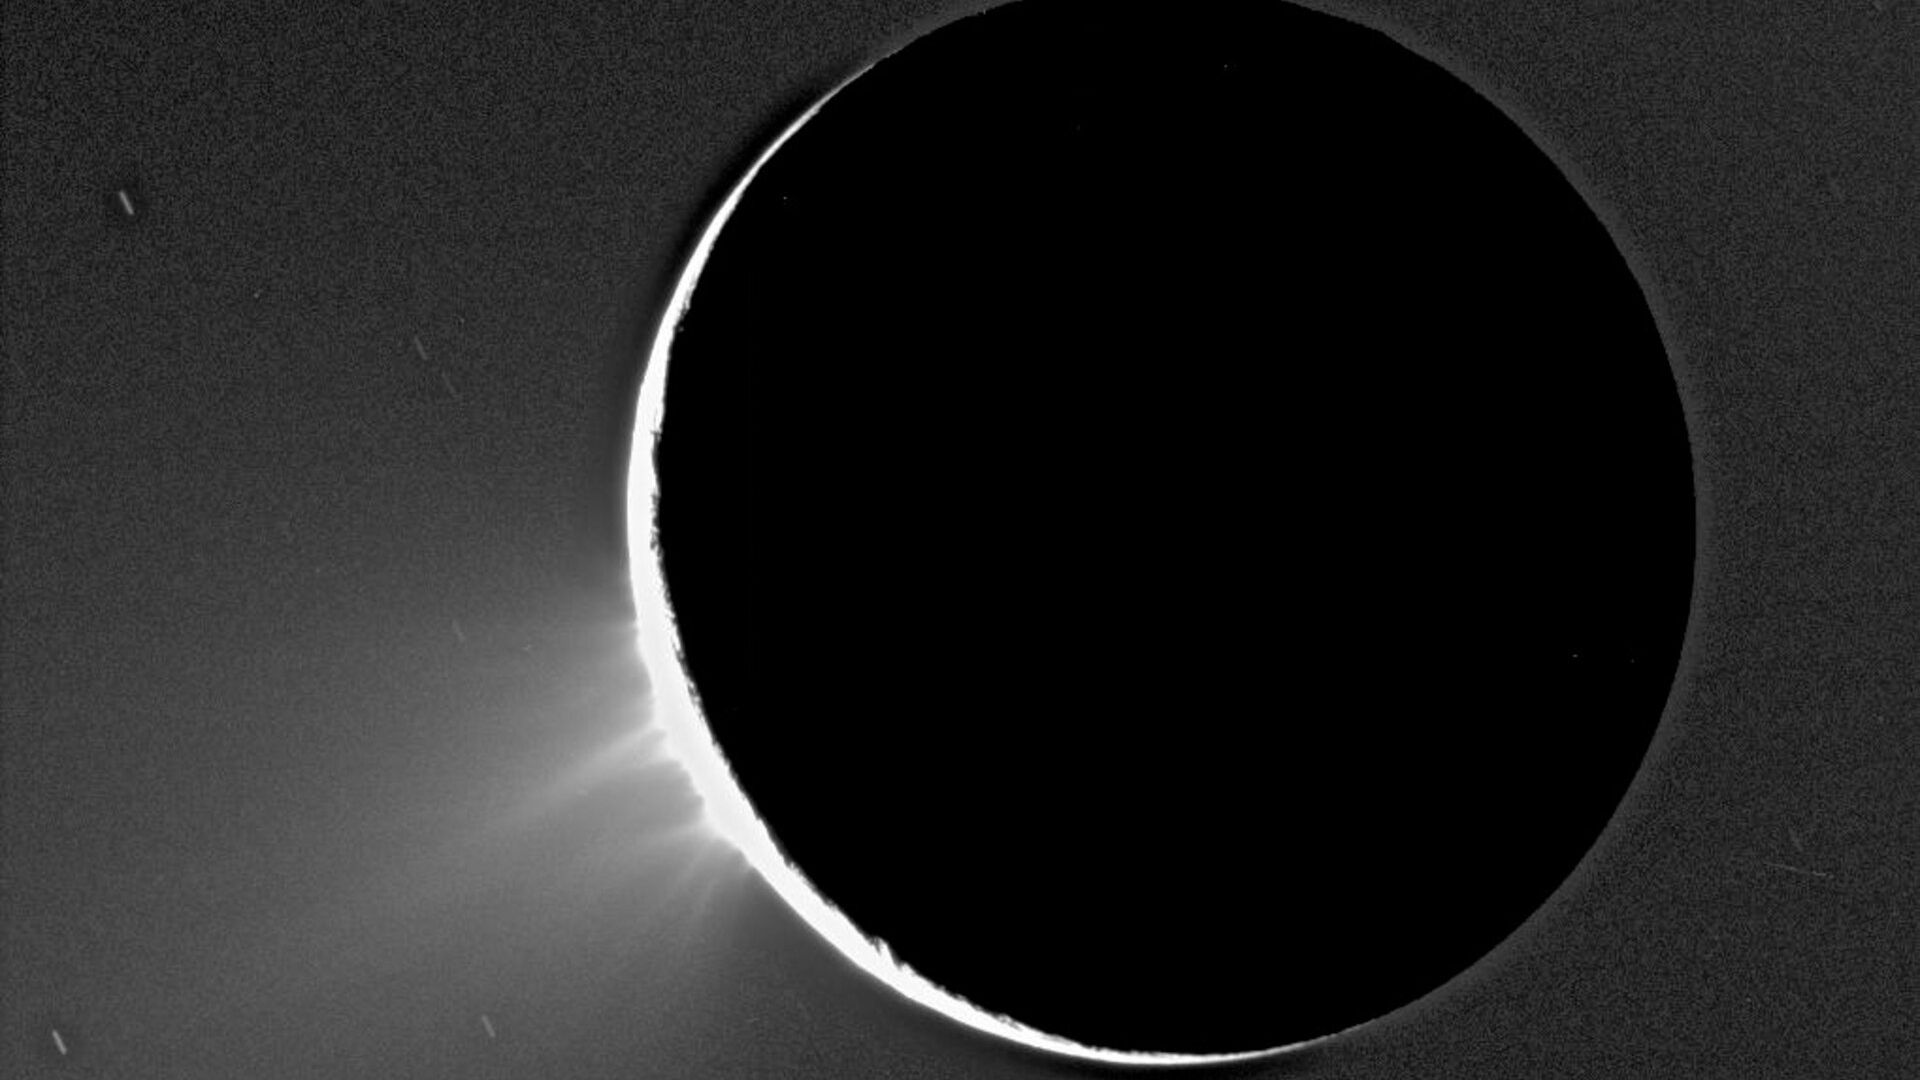 Jatos de partículas geladas são expelidos de Encélado, uma das luas de Saturno, nesta imagem registrada pela missão Cassini, em novembro de 2005. Esta e outras imagens de Encélado iluminado pelo Sol mostram sprays, em forma de fonte, de um material fino que se eleva sobre a região polar Sul. Esta imagem foi feita em um ângulo mais ou menos de lado para as fraturas apelidadas de “listras de tigres”, observadas em imagens anteriores na superfície de Encélado. Foram observadas plumas discretas, de uma variedade de tamanhos, acima da sua borda